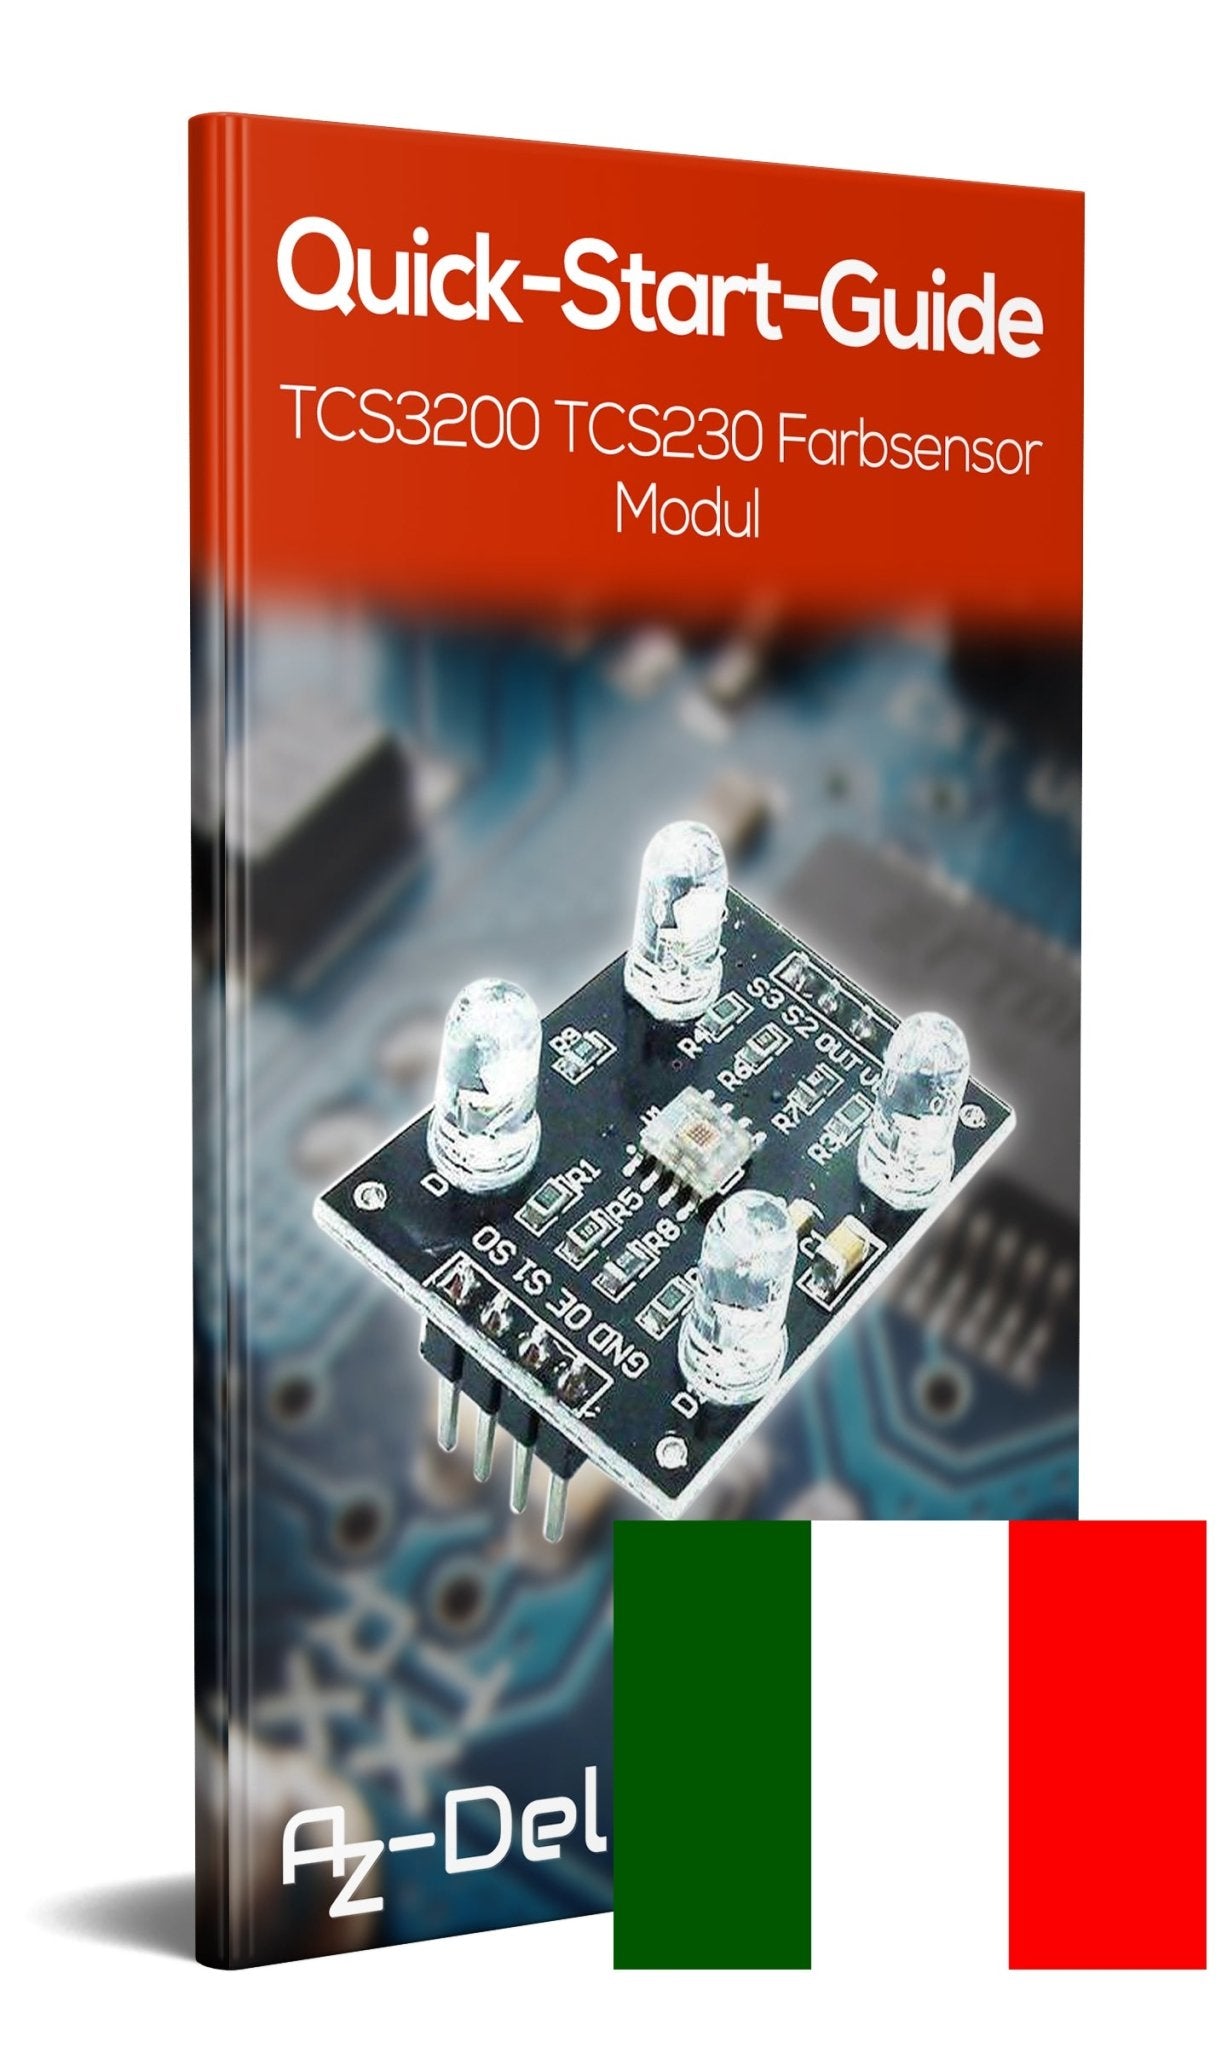 TCS3200 Farbsensor TCS230 Farben Sensor Modul - AZ-Delivery